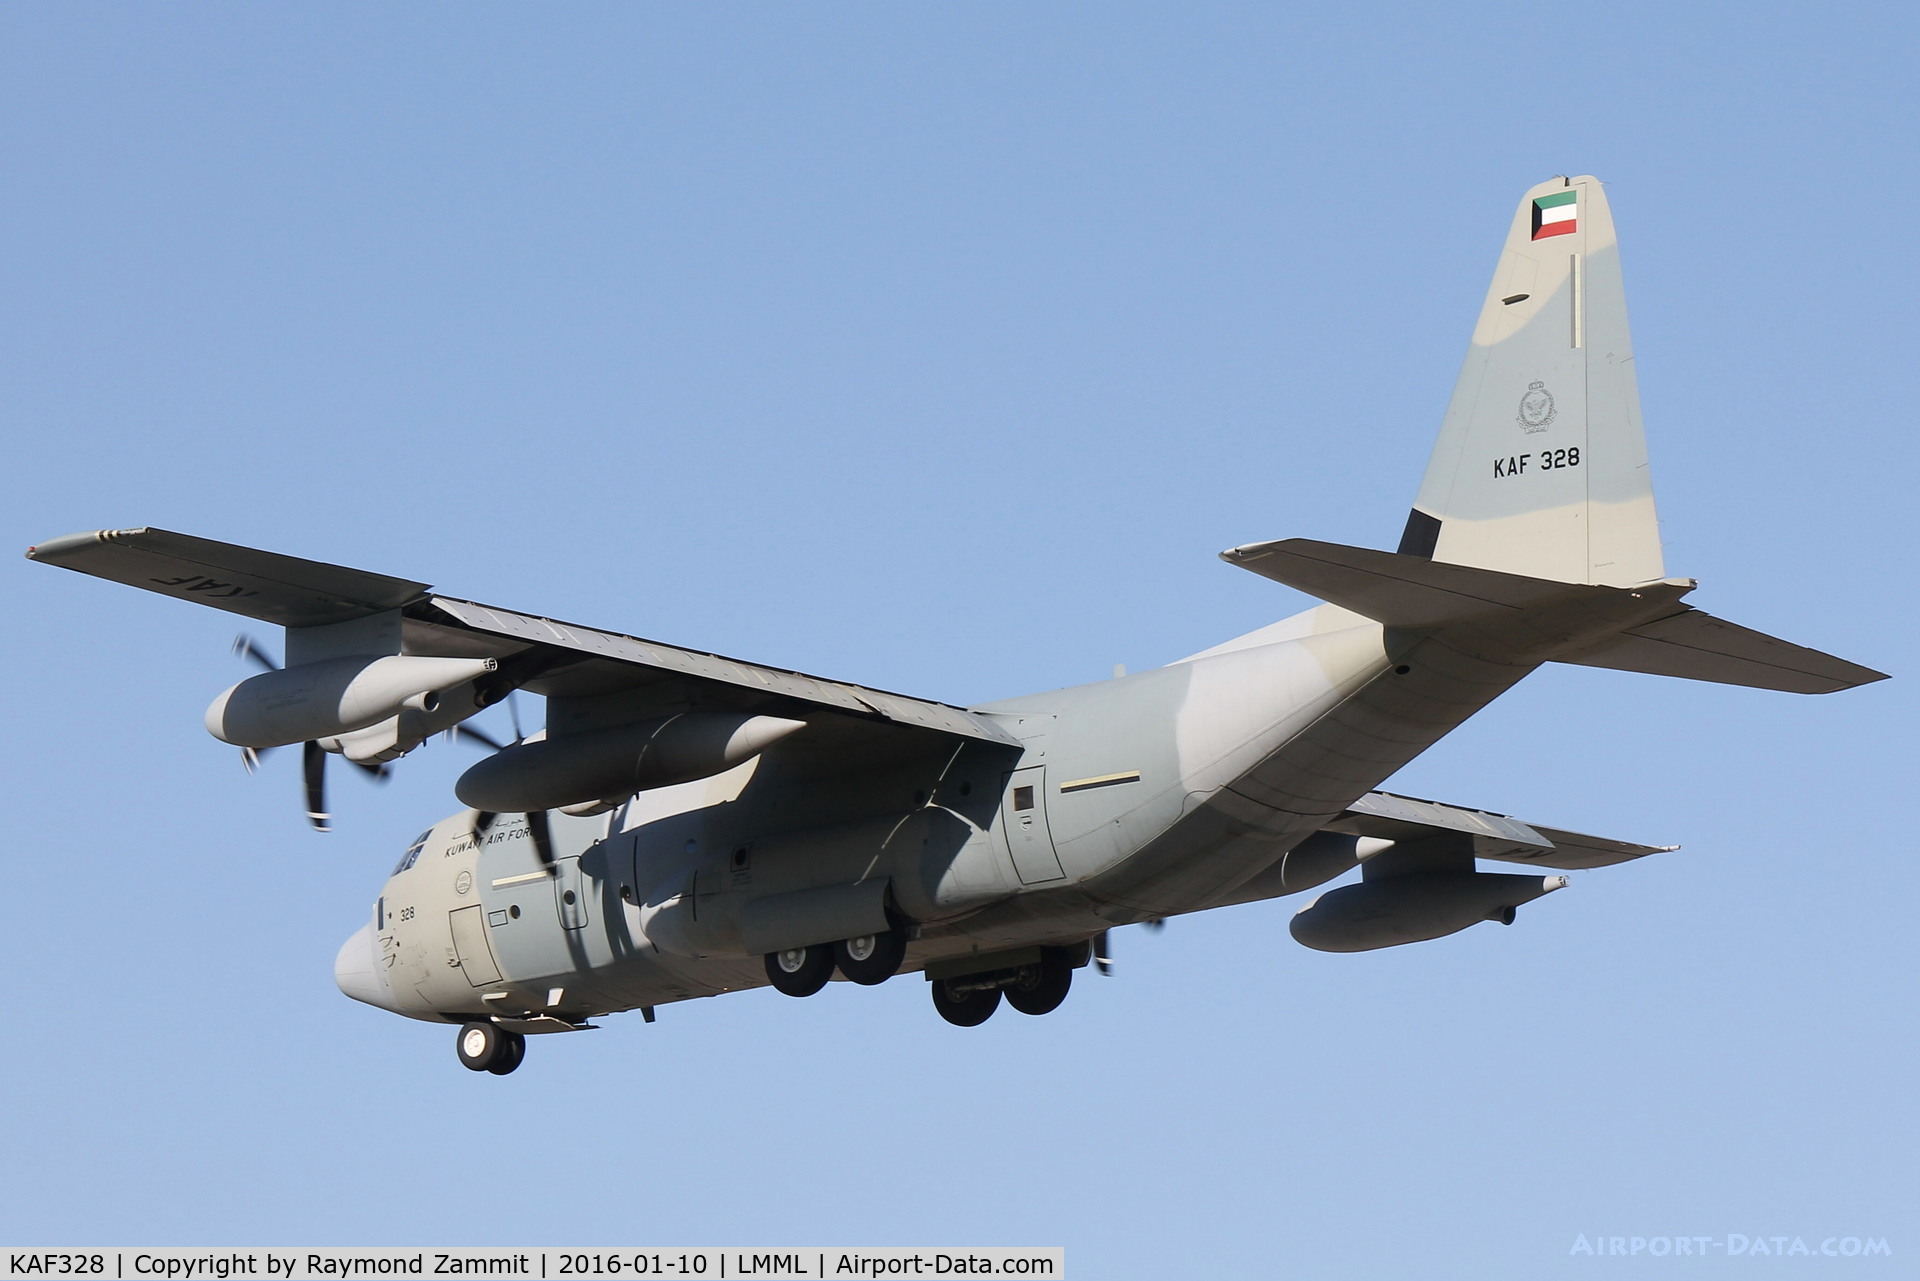 KAF328, 2015 Lockheed Martin KC-130J Hercules Hercules C/N 382-5751, Lockheed KC-130J Hercules KAF328 Kuwait Air Force